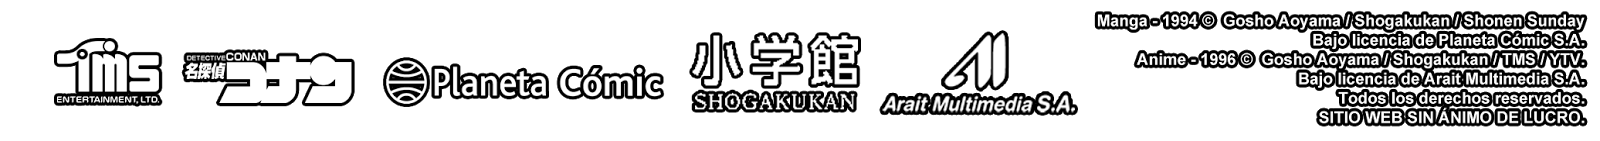 'Detective Conan' es una marca de TMS Entertainment y Shogakukan. Todos los derechos reservados.